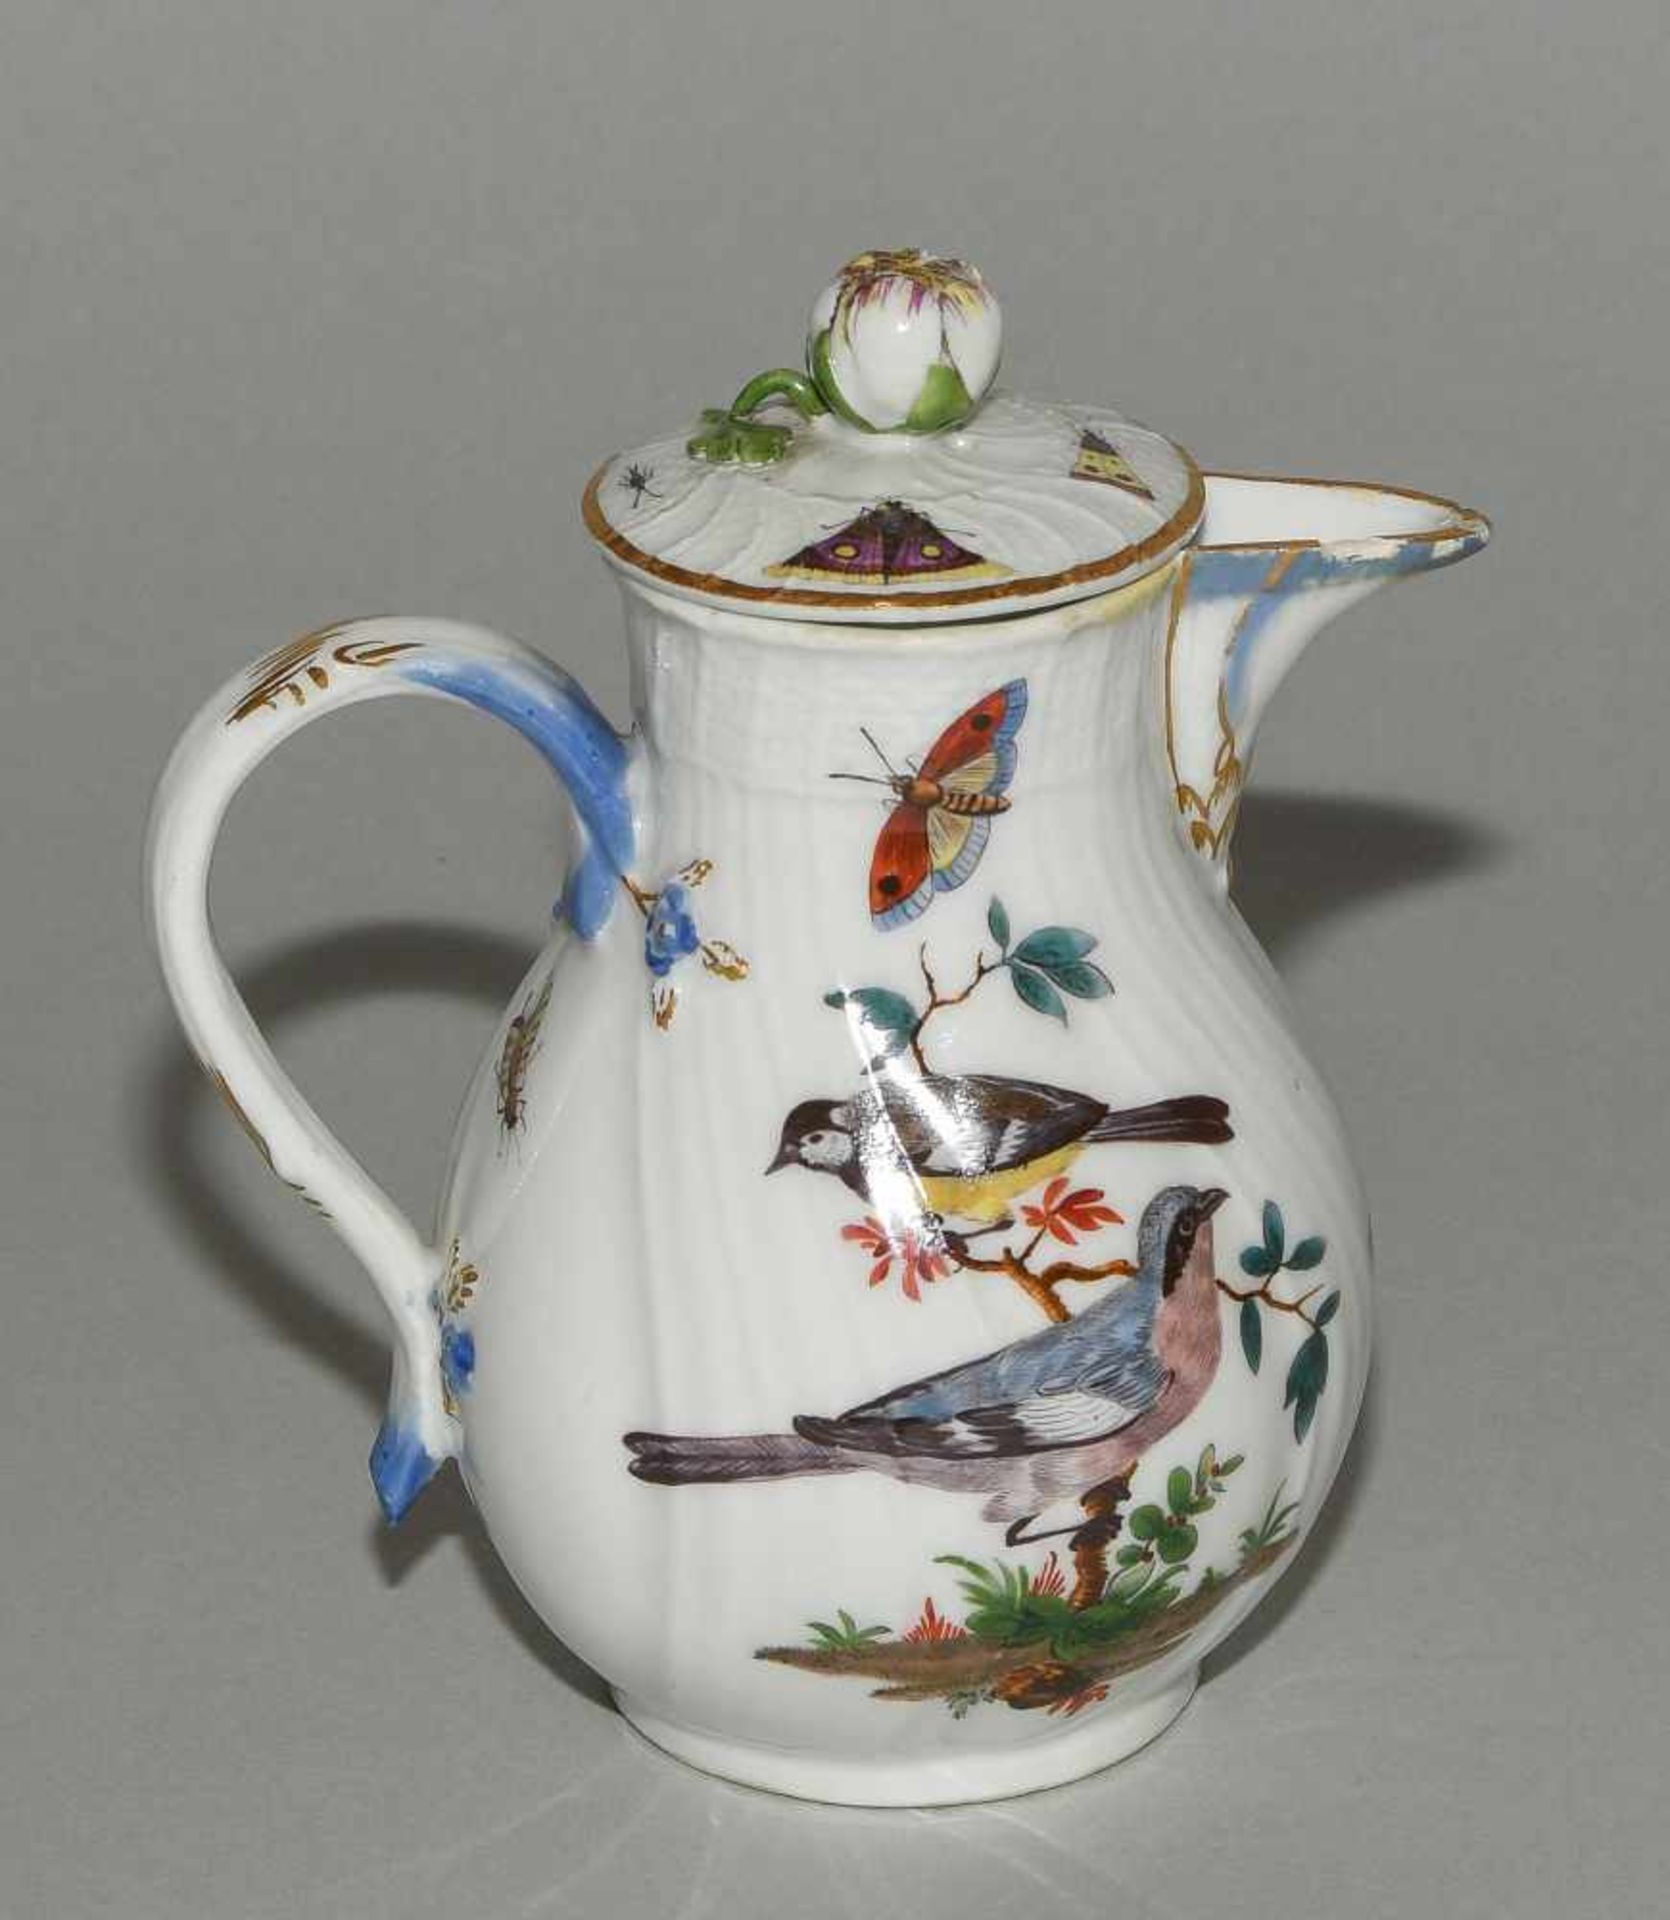 Kaffee- und Teeservice, Meissen Um 1770. Porzellan, Neuozier-Reliefdekor, polychrome Vogelmalerei - Bild 16 aus 64